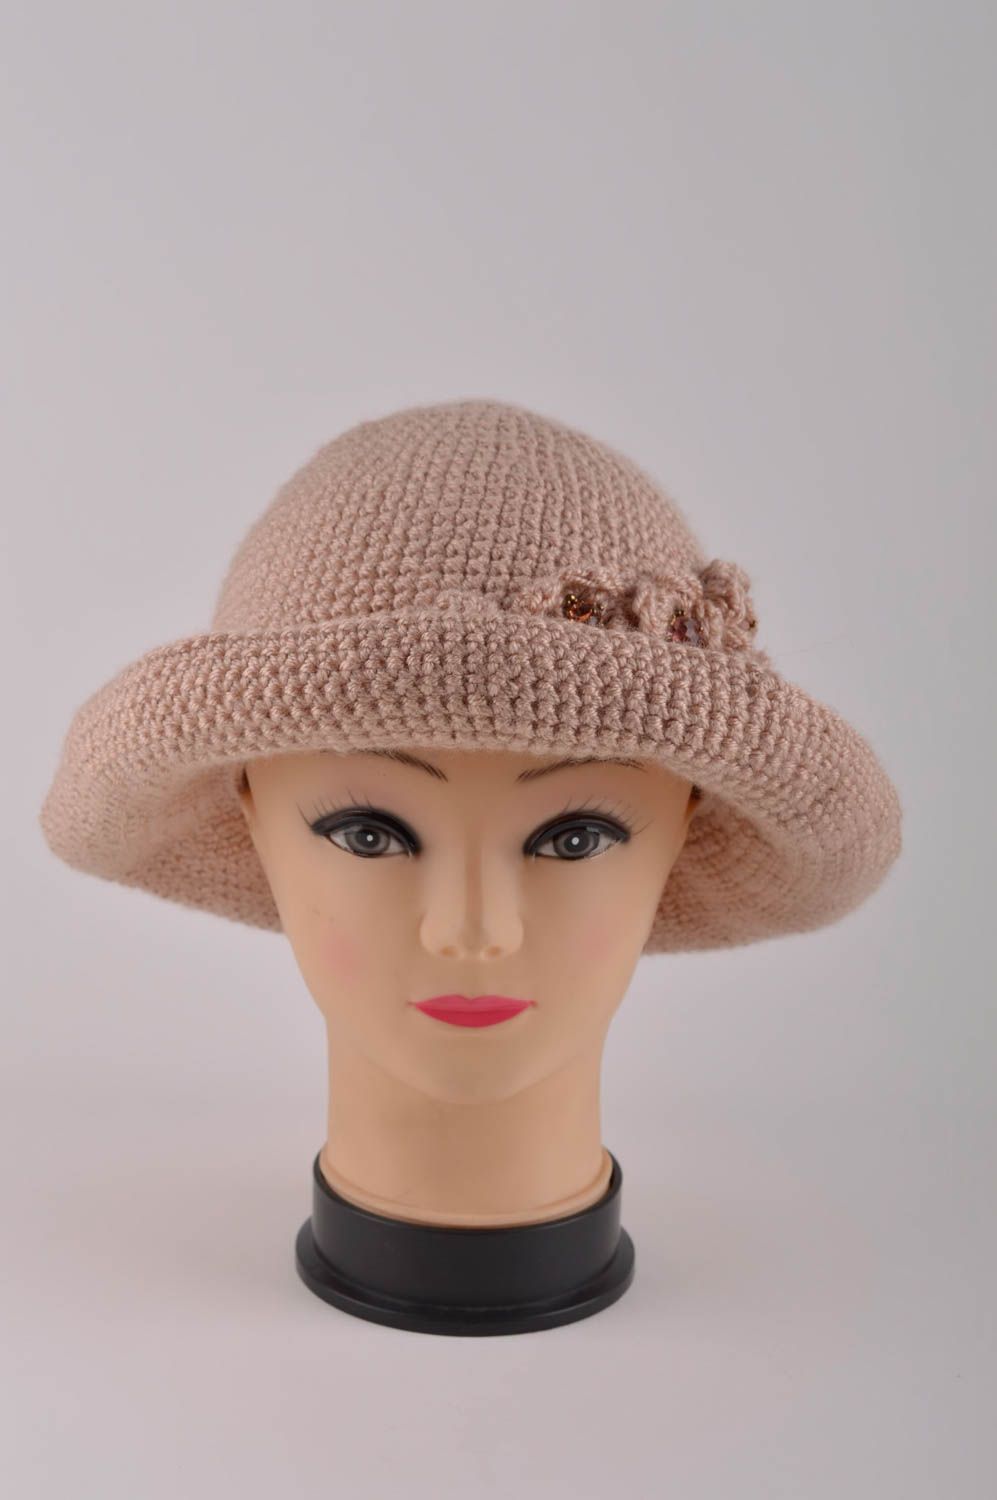 Вязаная шляпа ручной работы головной убор женская шляпа оригинальная авторская фото 3